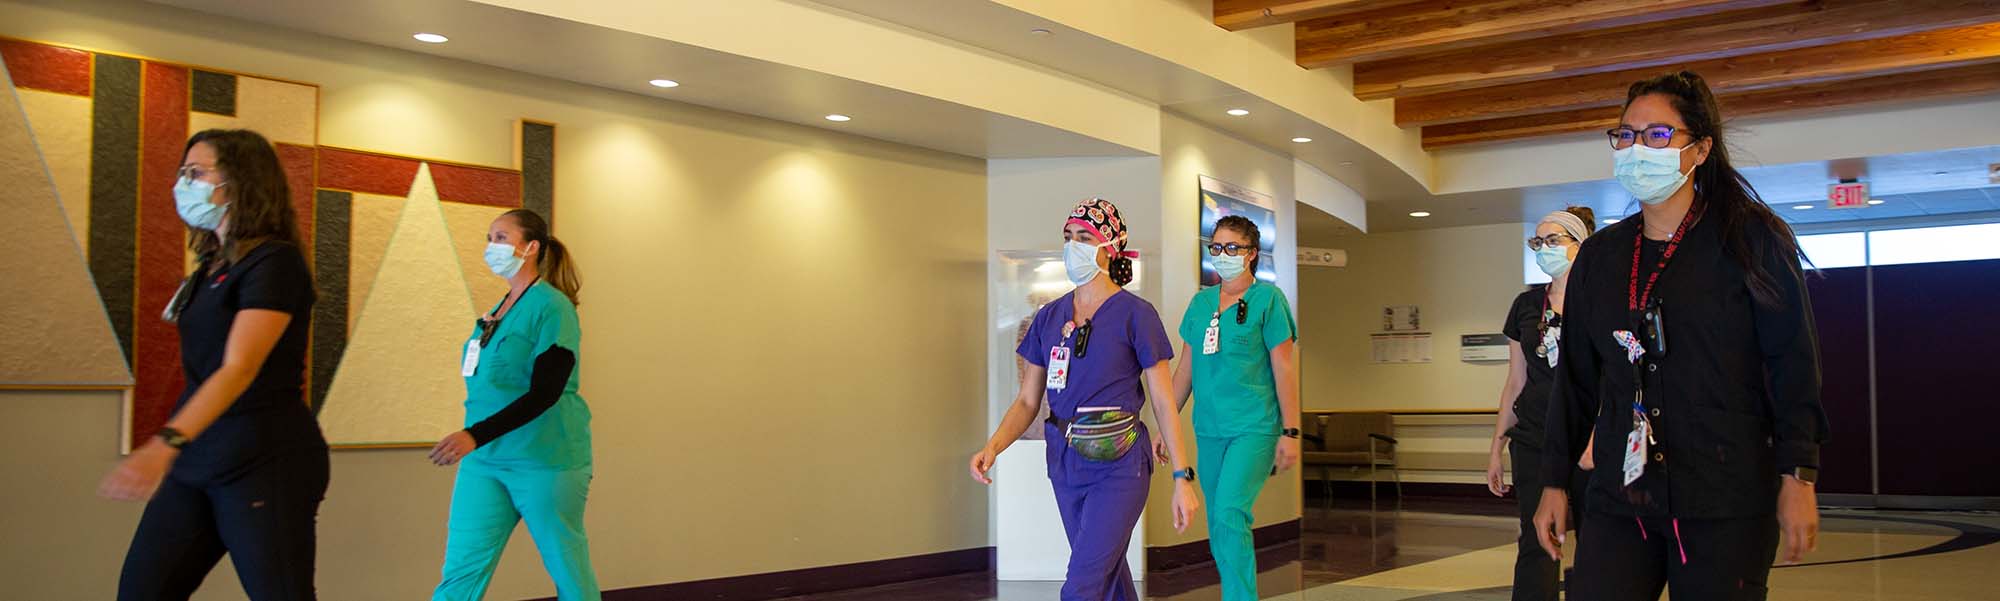 UNM-Krankenschwestern gehen einen Flur entlang